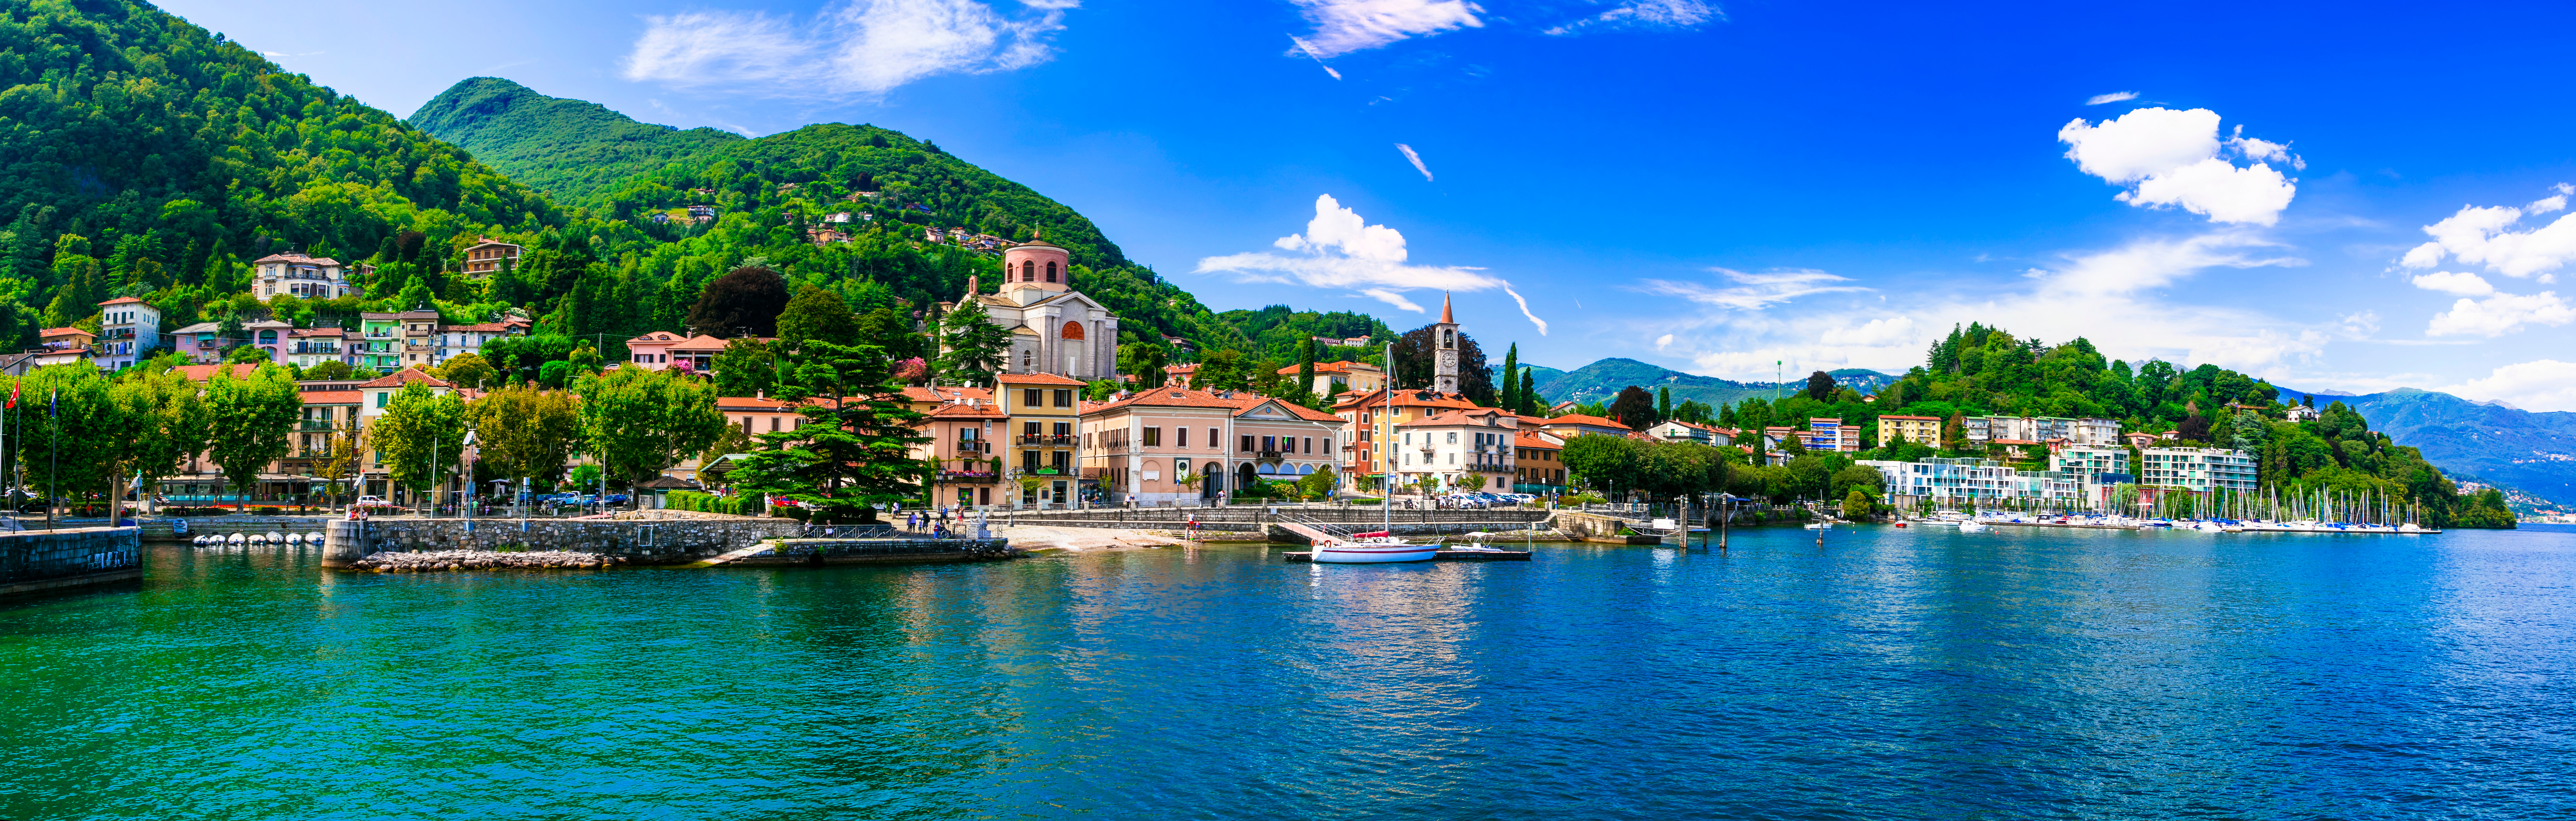 Italy Lake Maggiore